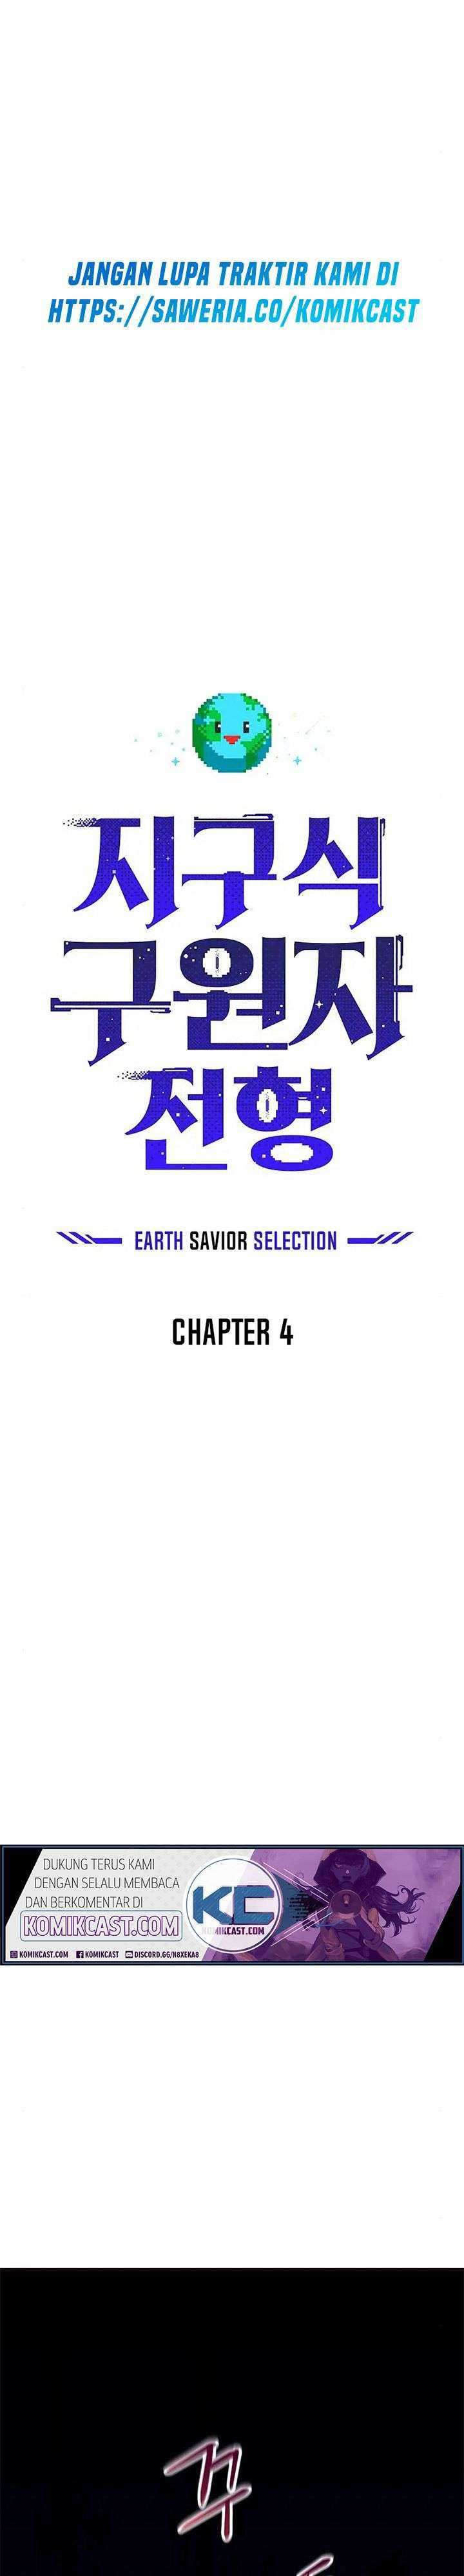 The Earth Savior Selection Chapter 4